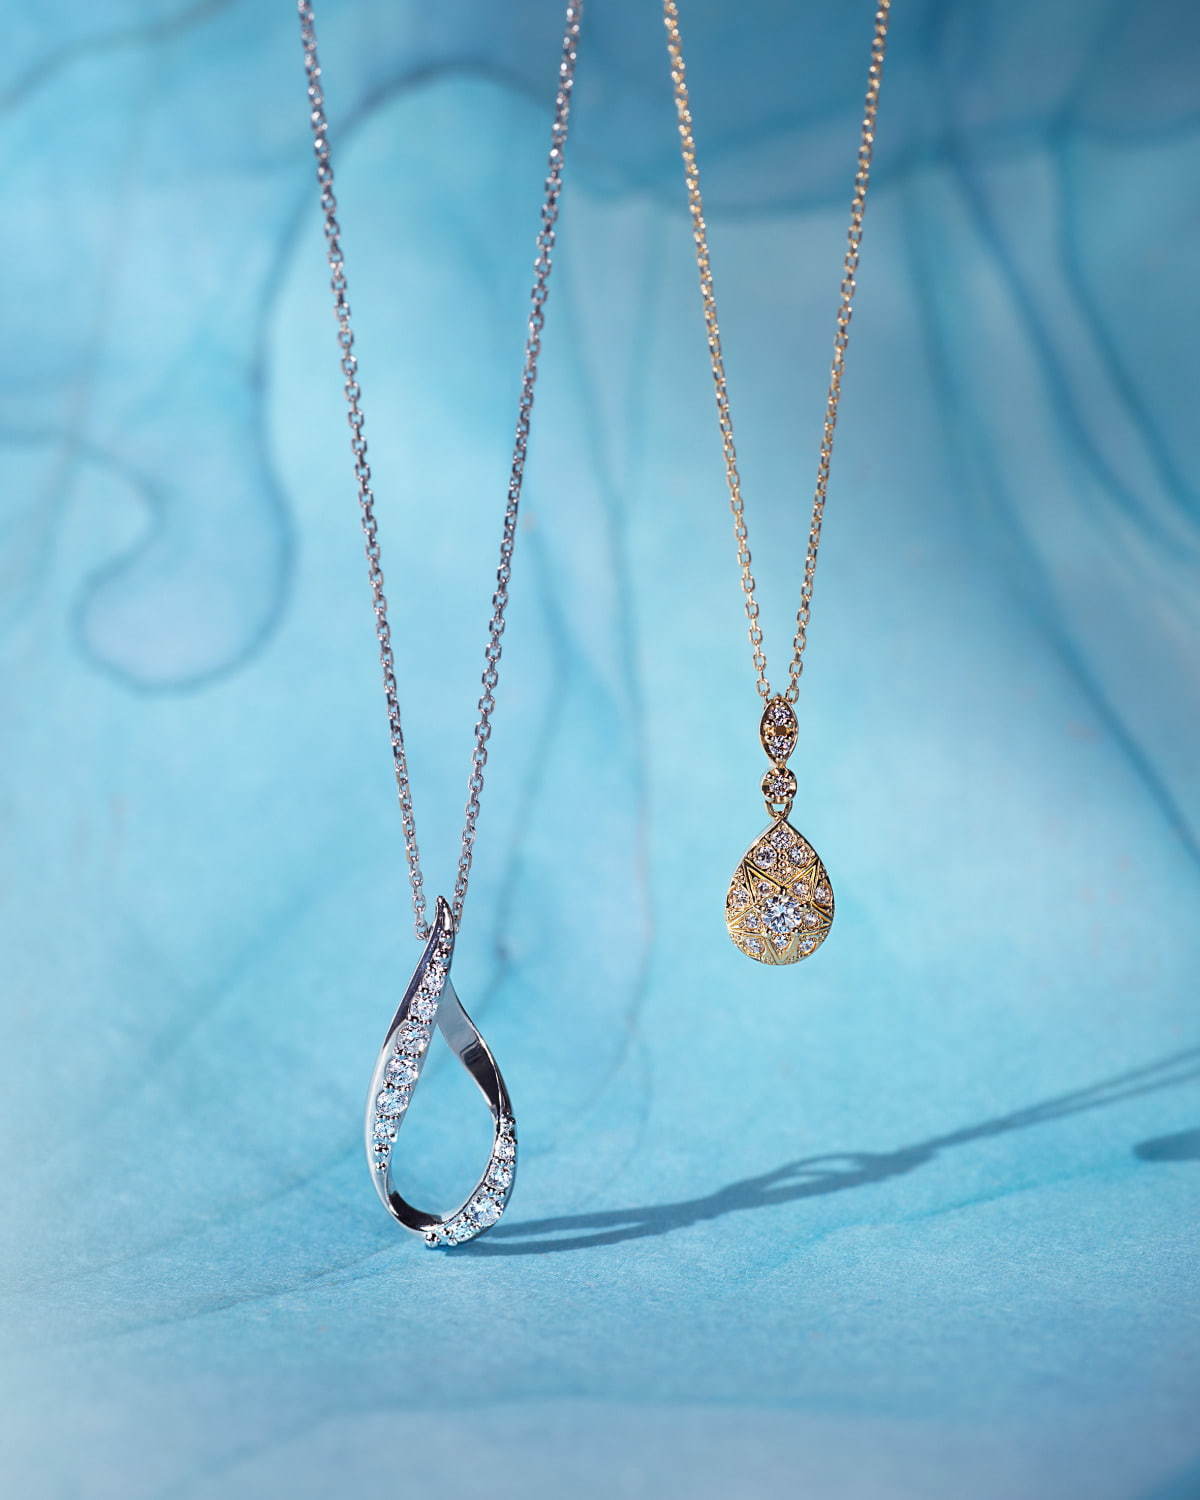 ヴァンドーム青山のダイヤモンドネックレス、"星隠れる"雫モチーフのお守りジュエリー - ファッションプレス